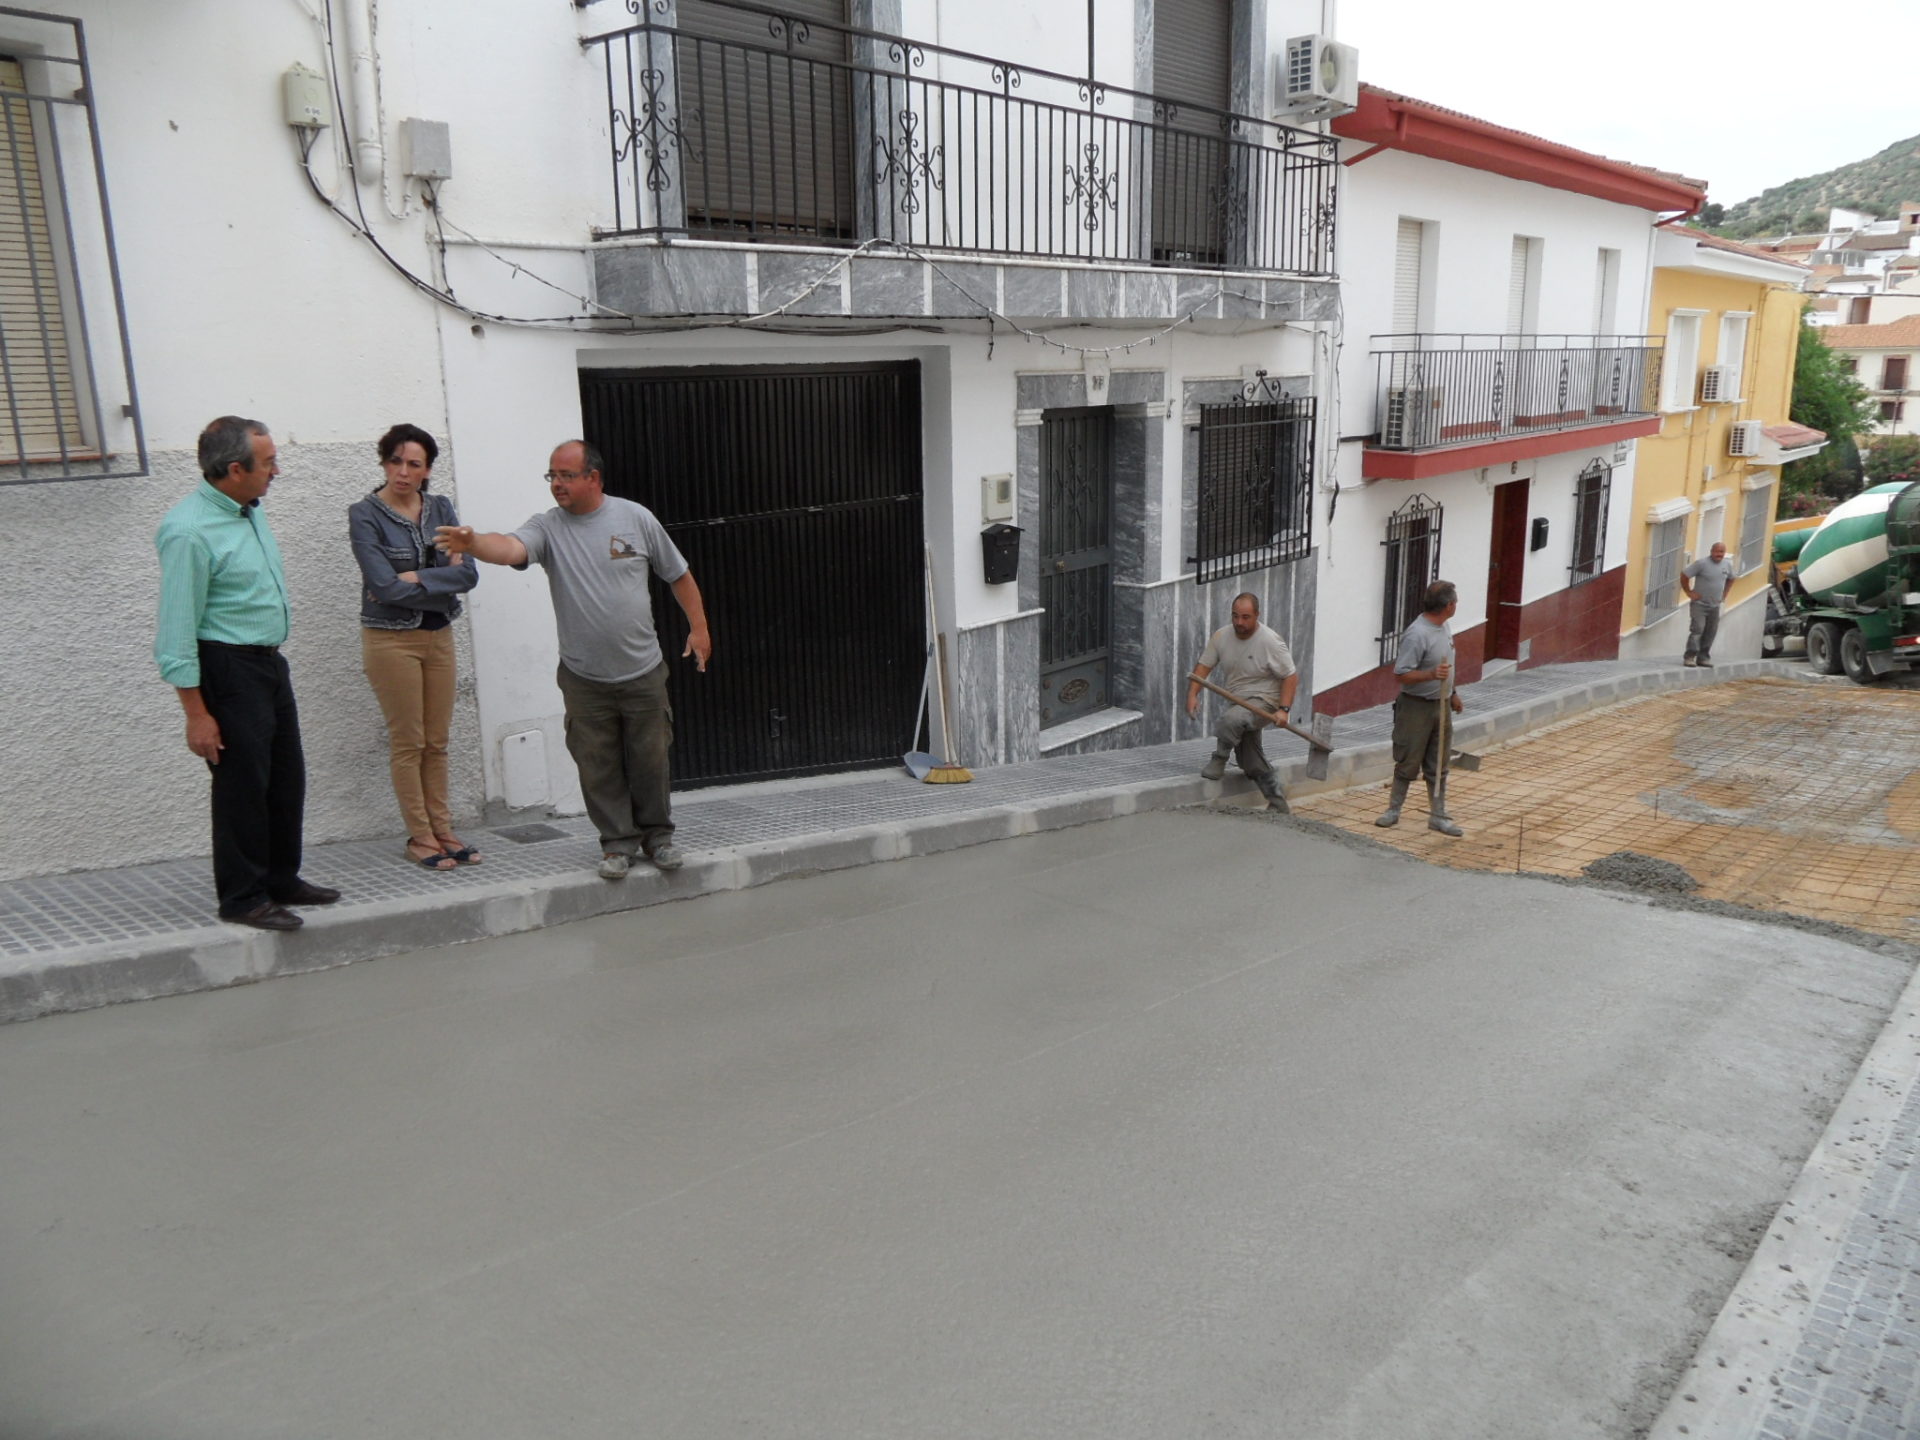 Infraestructuras reforma la calle Trafalgar en la barriada de Buenavista en Priego de Córdoba 1